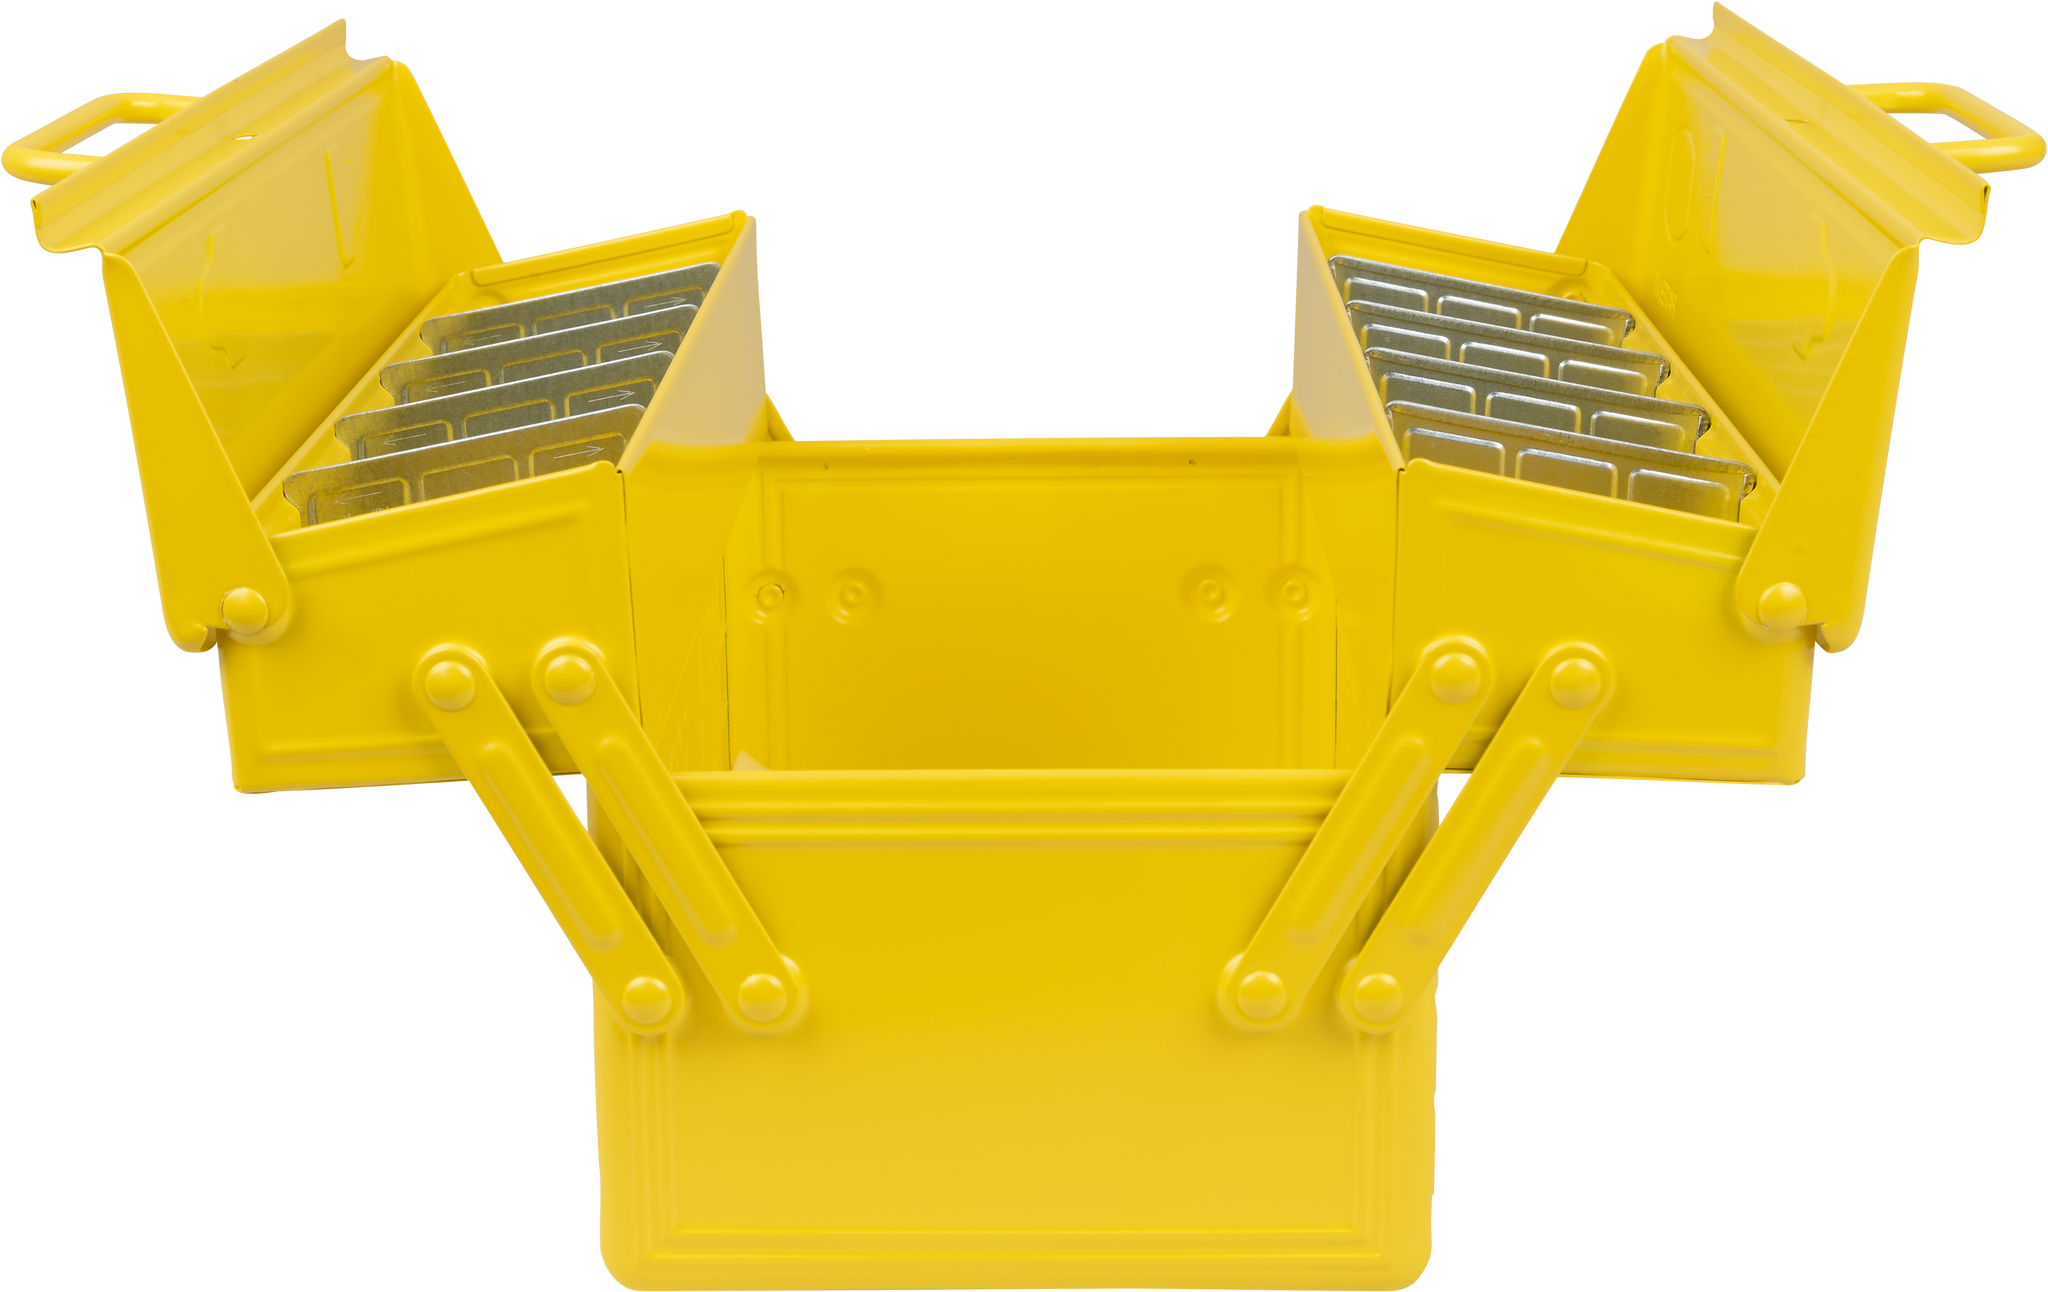 niwaki-st-type-tool-box-yellow-open-view